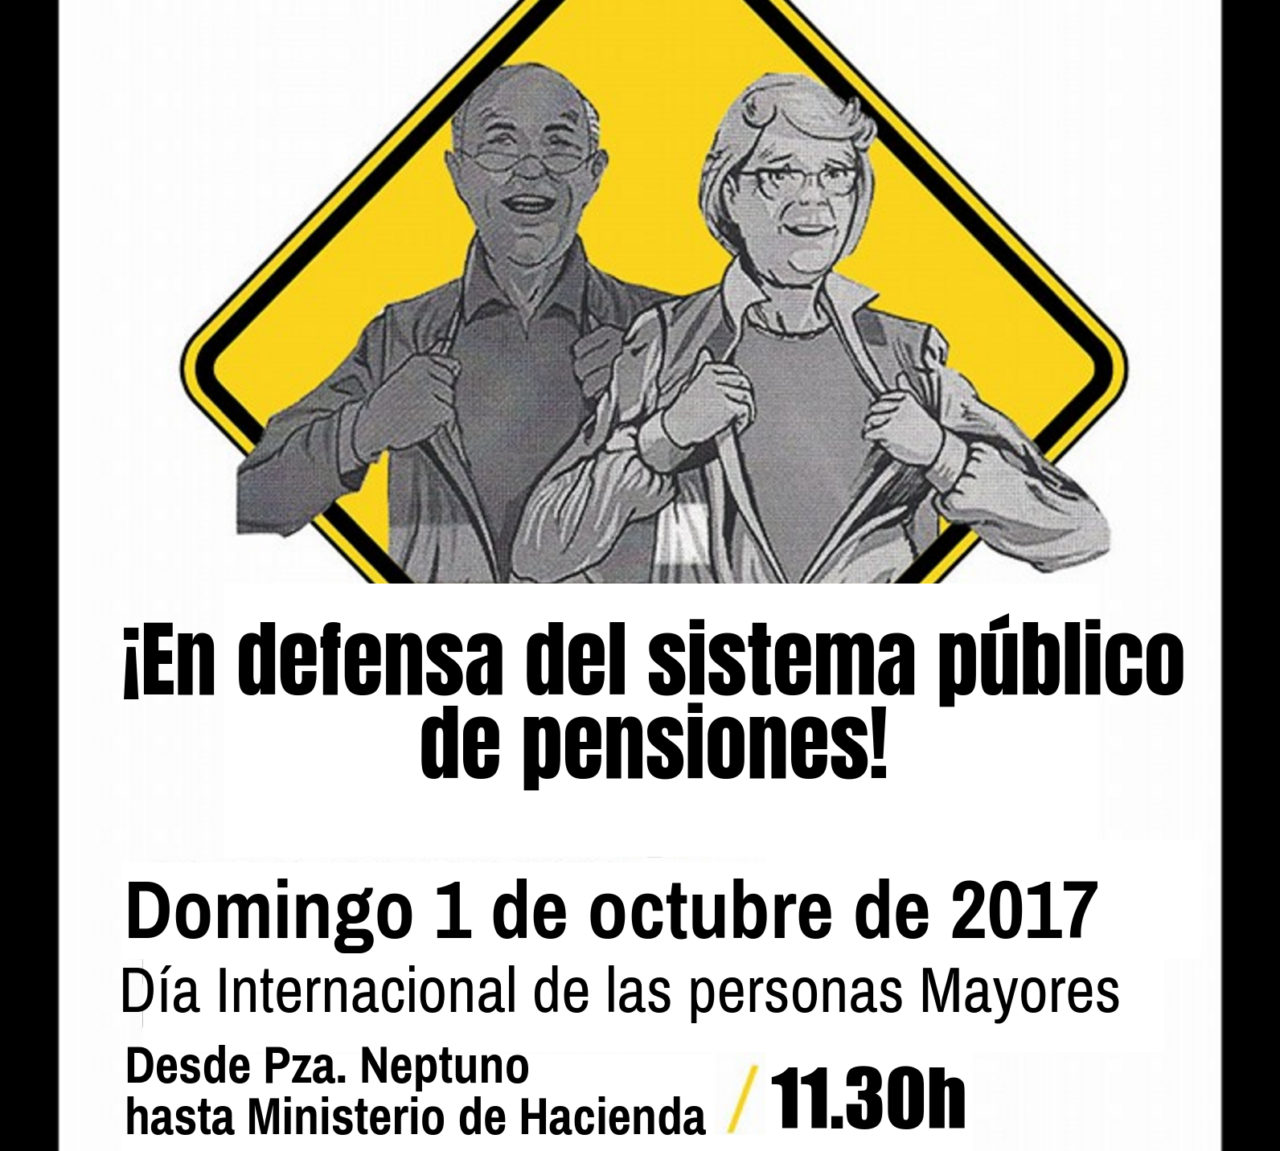 El Día de las Personas Mayores, salimos a la calle para defender el sistema público de pensiones